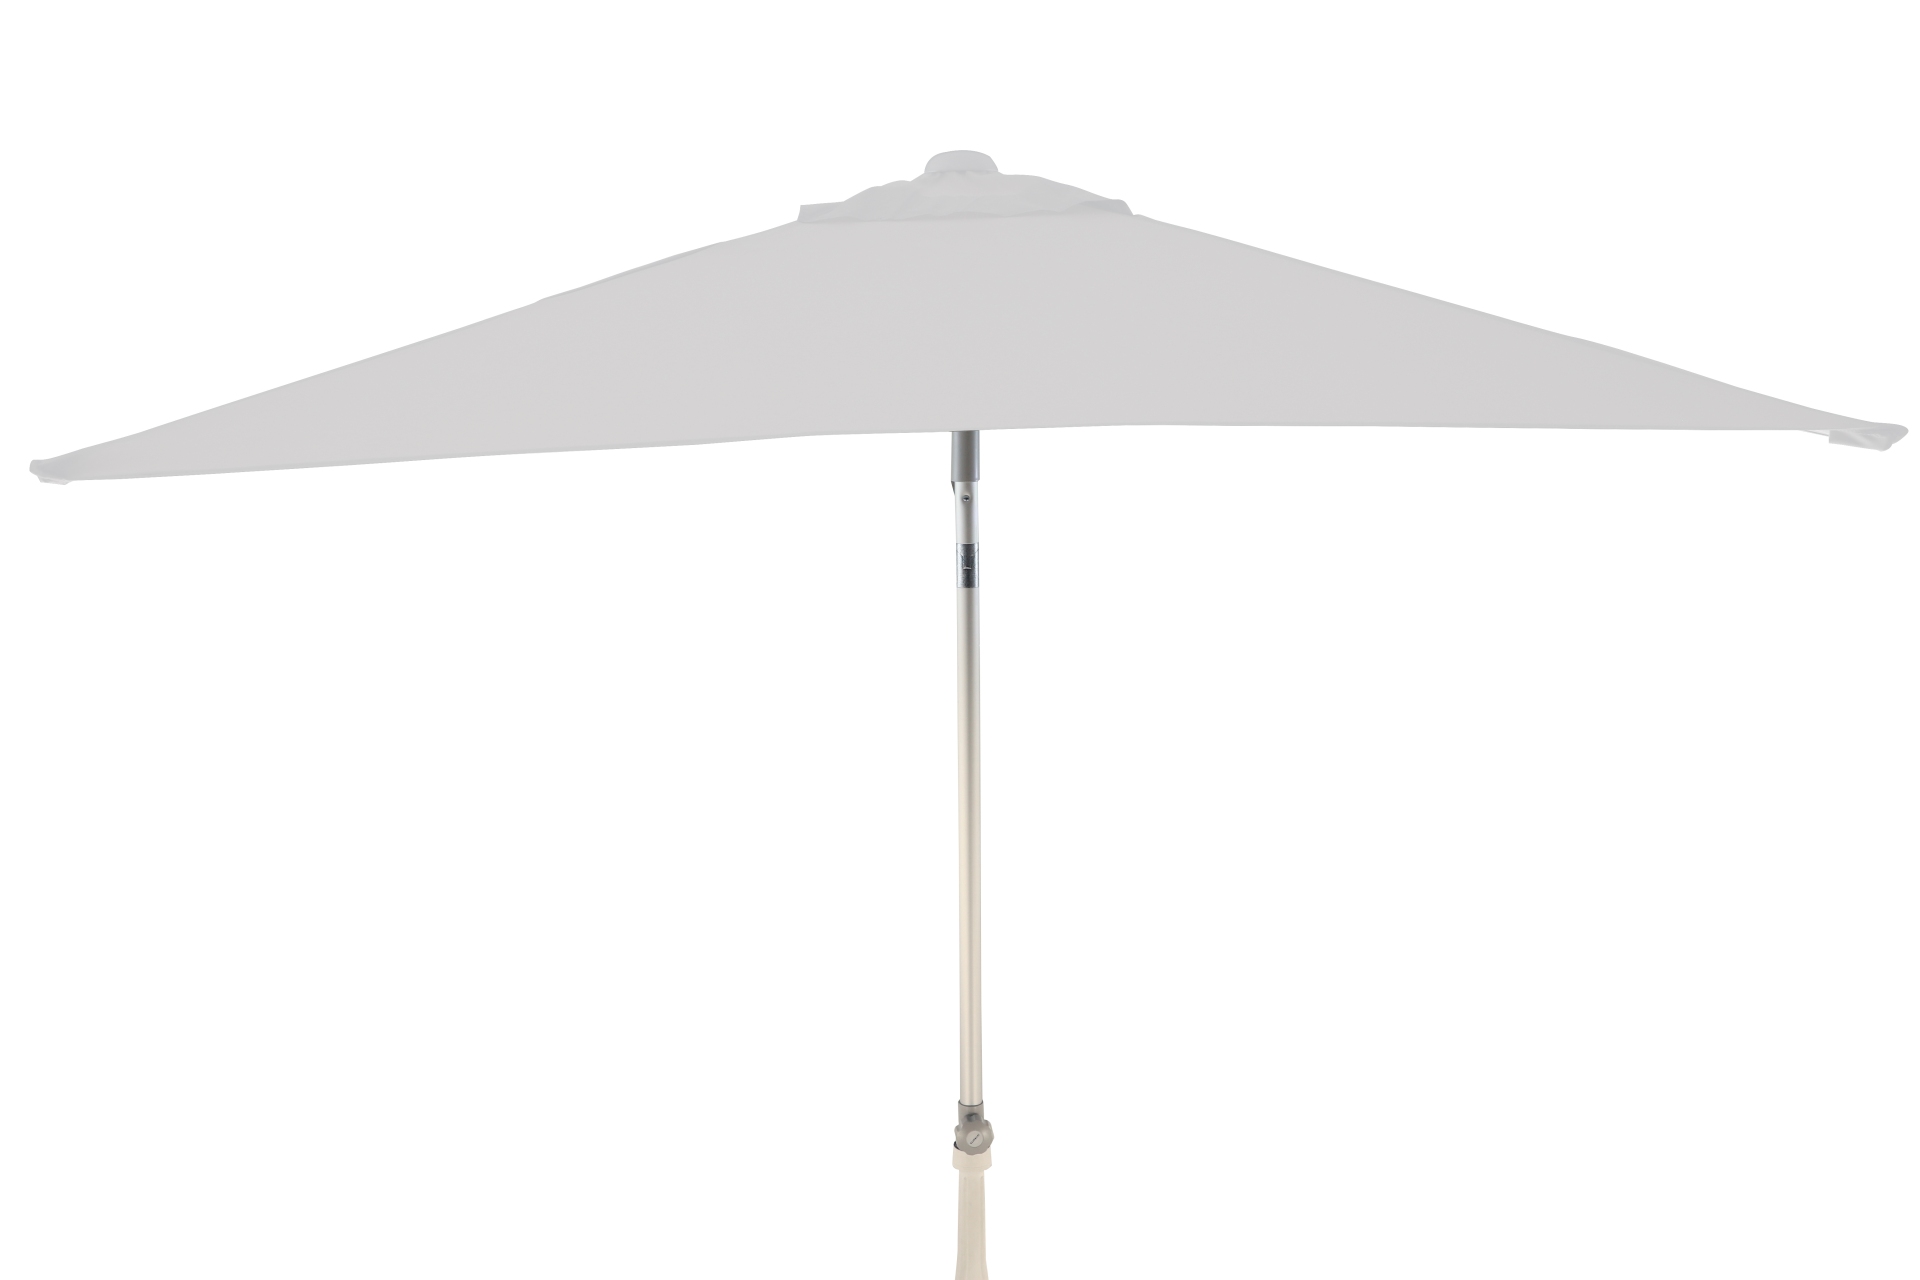 Der Sonnenschirm Elba überzeugt mit seinem modernen Design. Die Form des Schirms ist Eckig und hat eine Größe von 150 cm. Designet wurde er von der Marke Jan Kurtz und hat die Farbe Weiß.